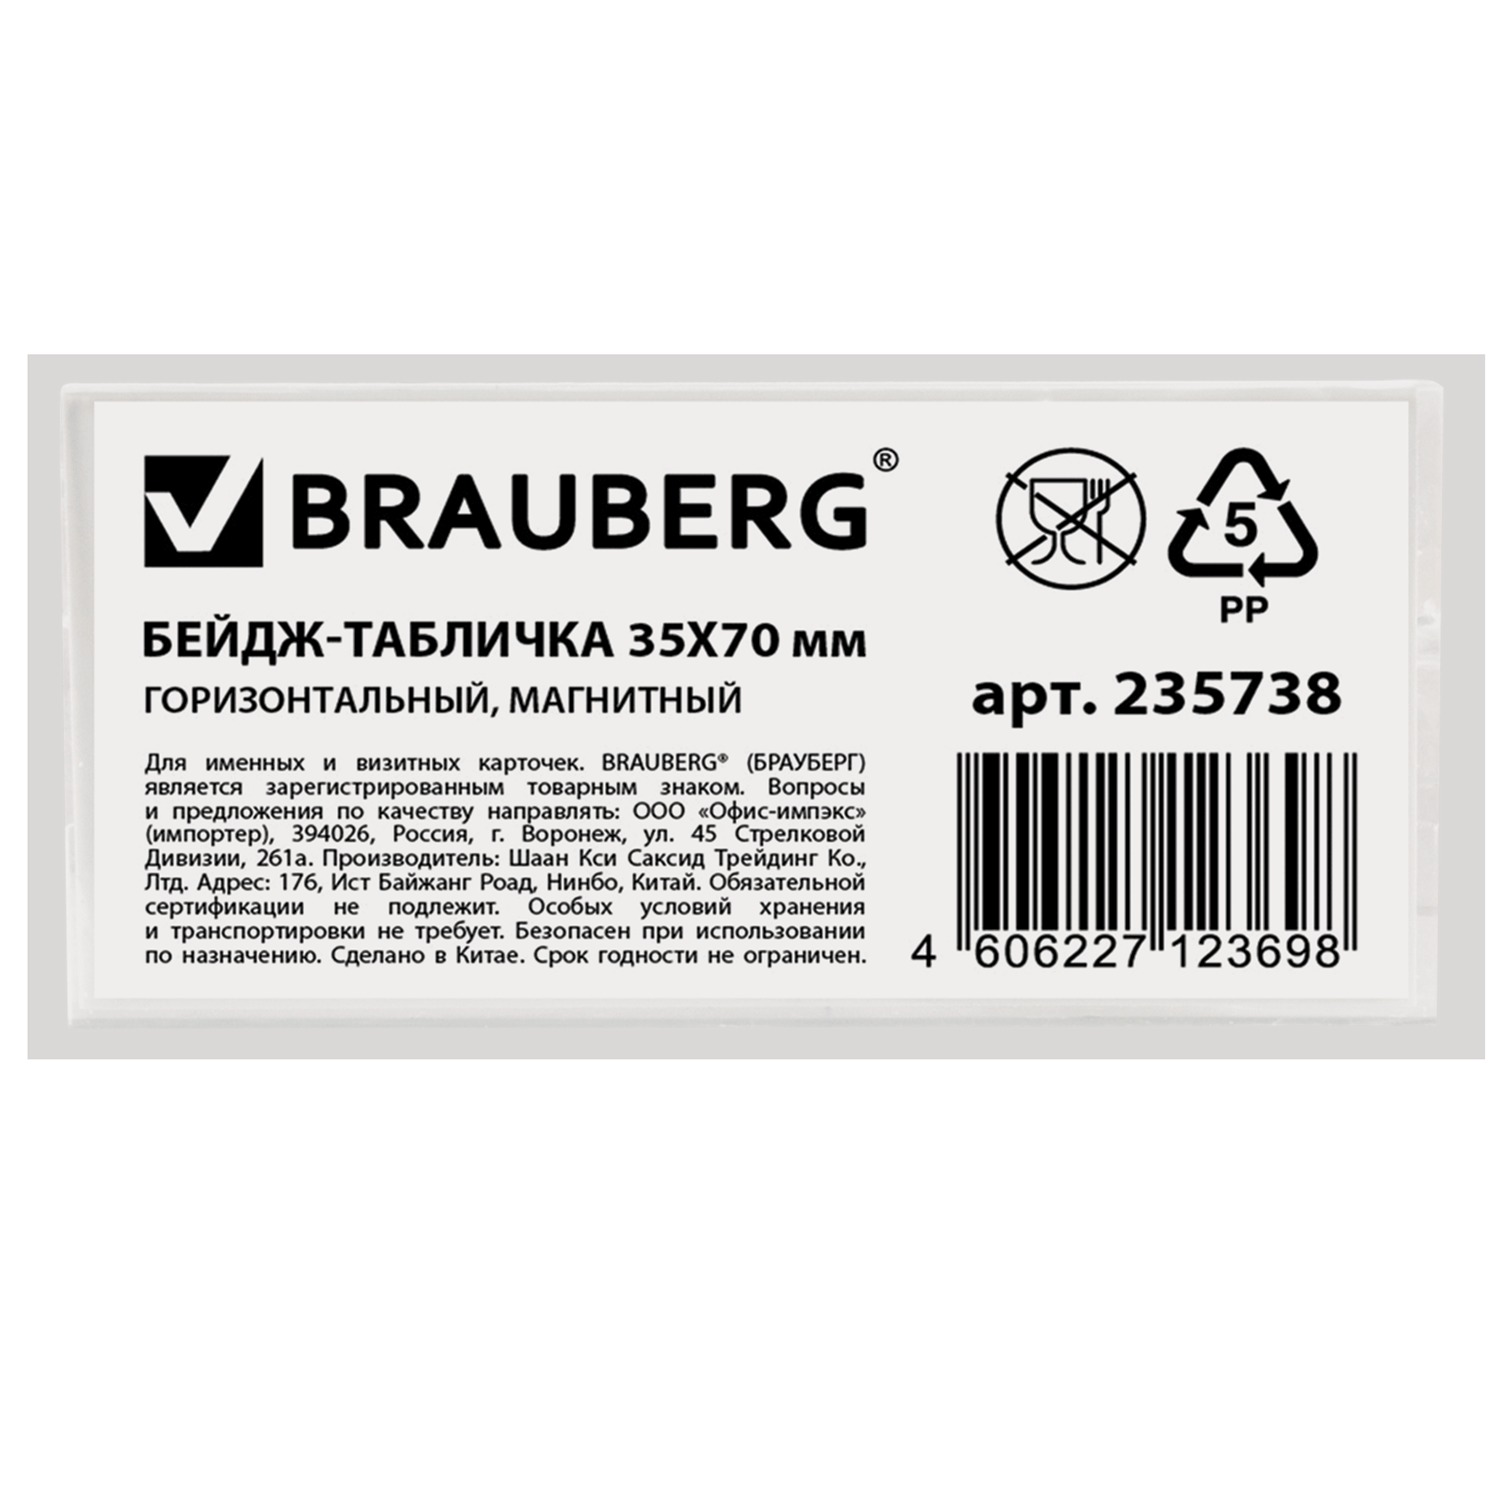 Бейдж-табличка BRAUBERG, 35х70 мм, горизонтальный, магнитный